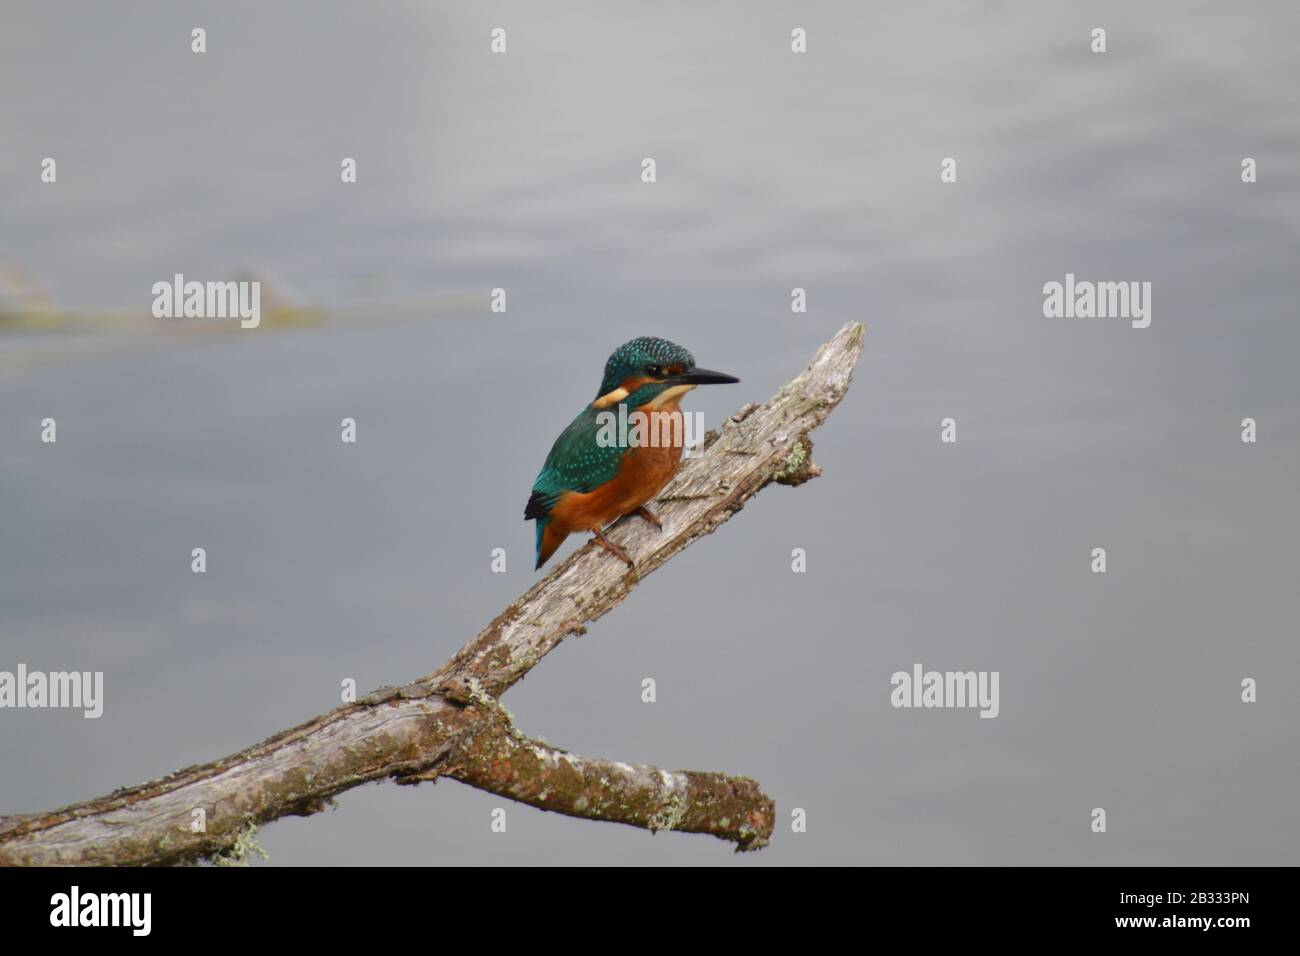 Magnifique Kingfisher sur un perch dans la réserve naturelle galloise. Banque D'Images